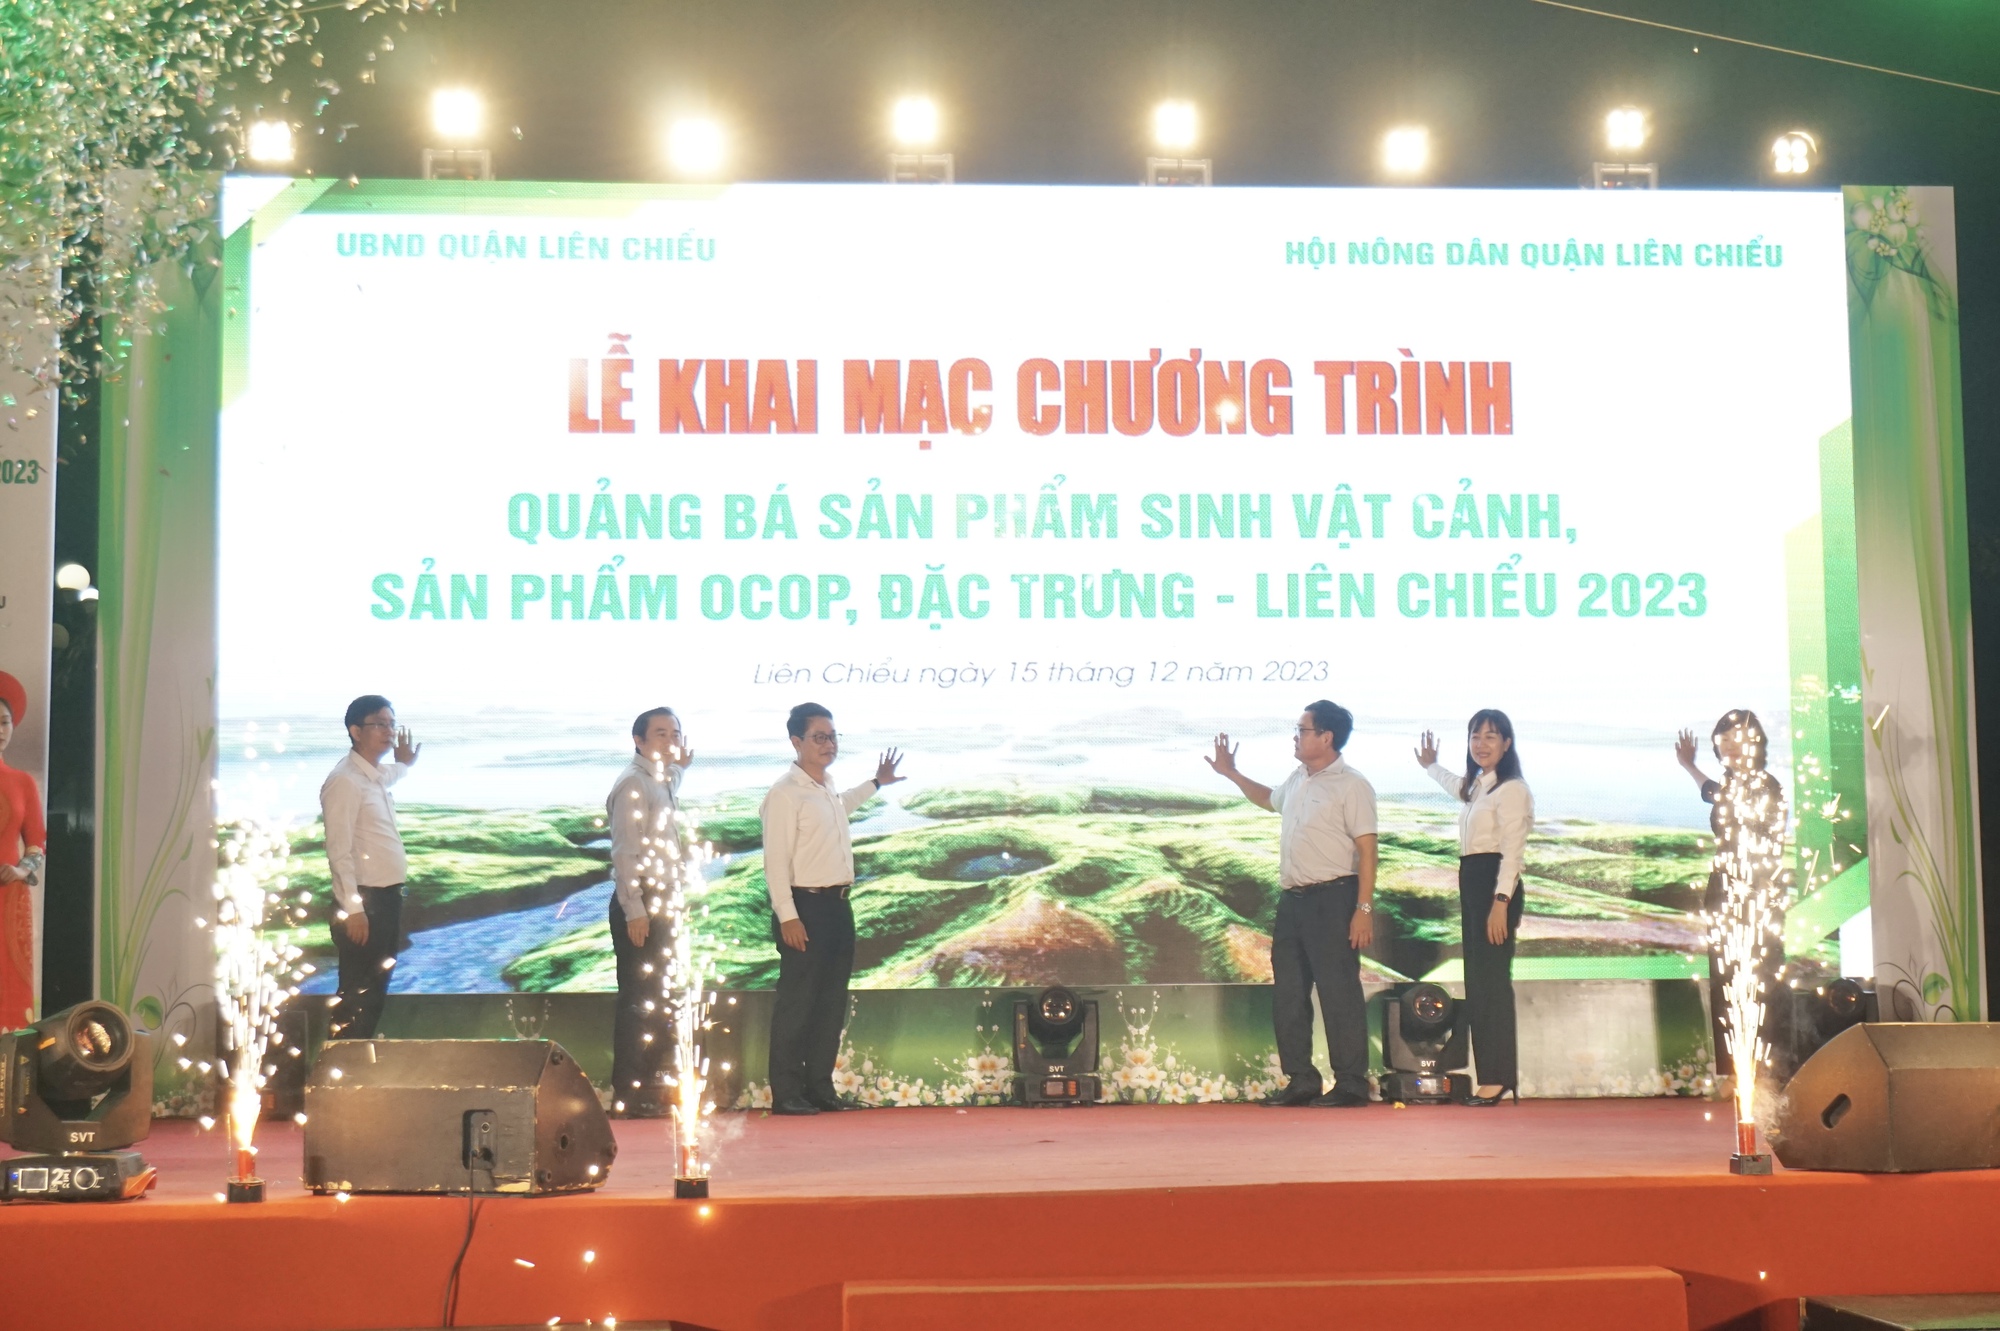 Đà Nẵng: Hàng chục gian hàng tham gia quảng bá sản phẩm OCOP, sinh vật cảnh quận Liên Chiểu năm 2023 - Ảnh 1.